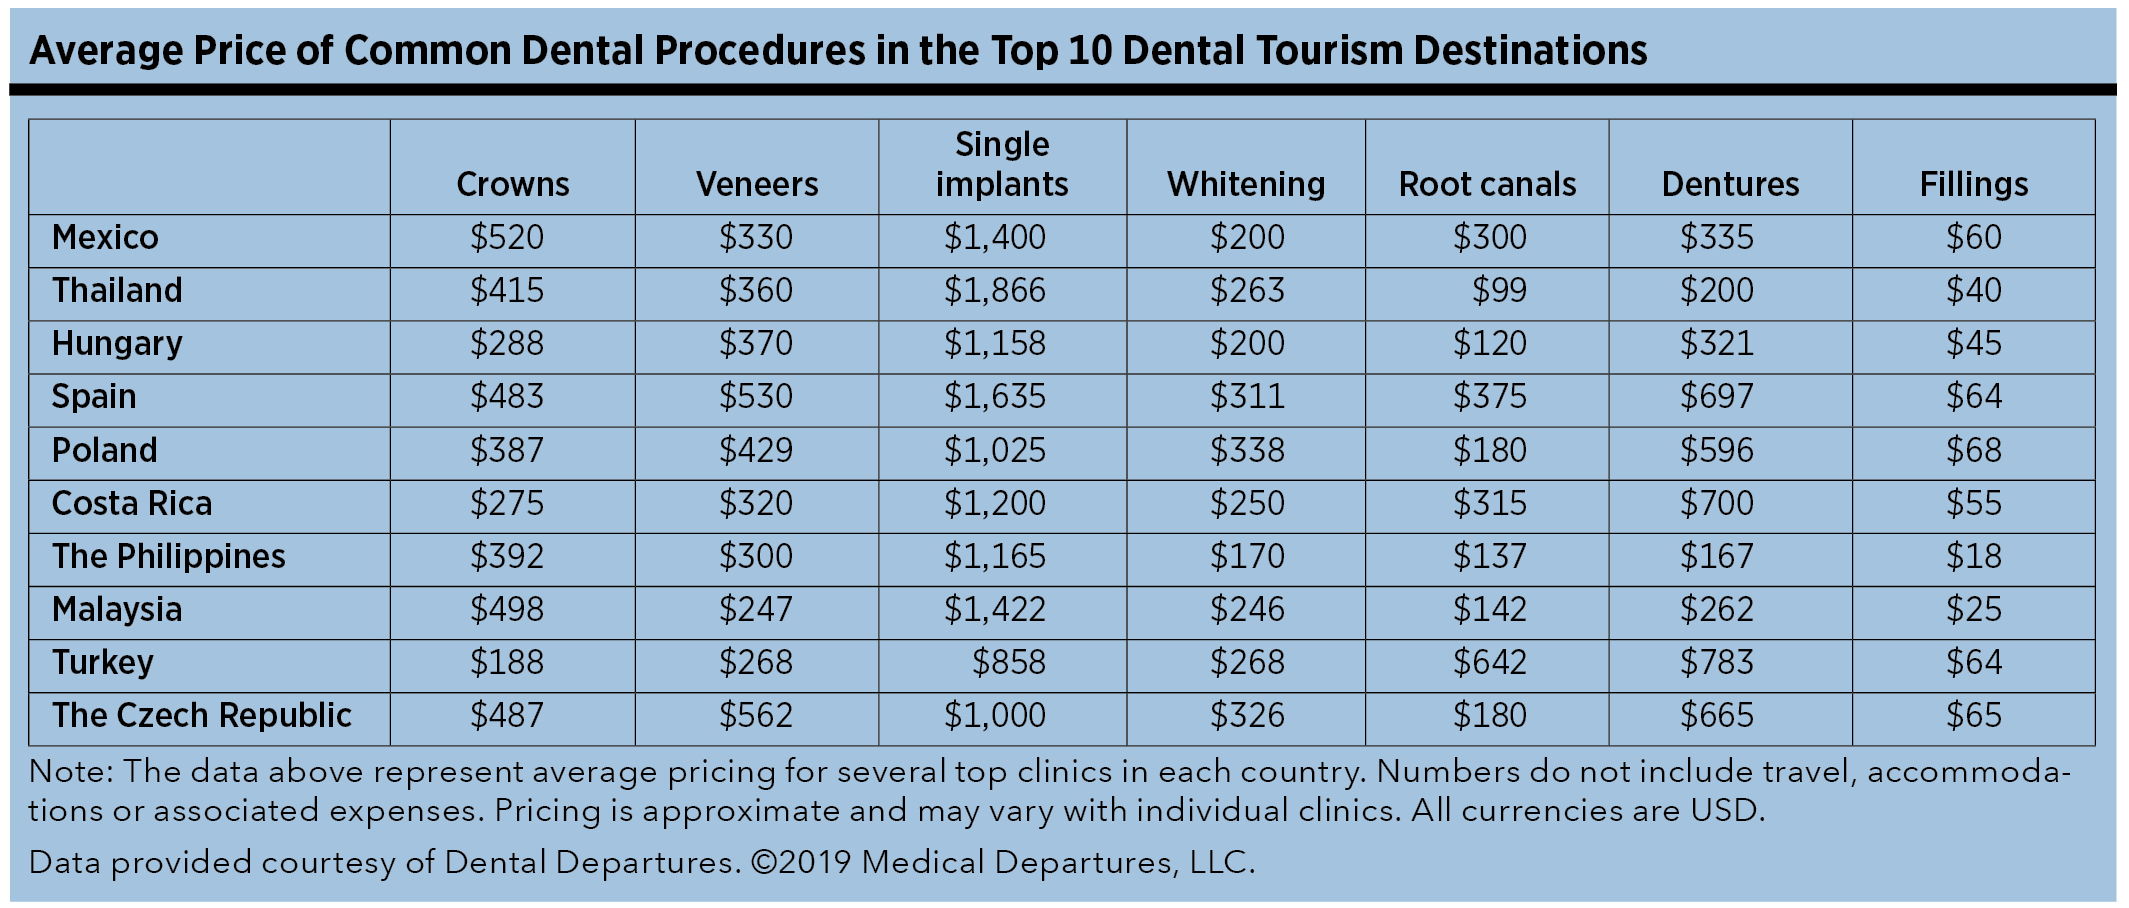 Average Price of Common Dental Procedures